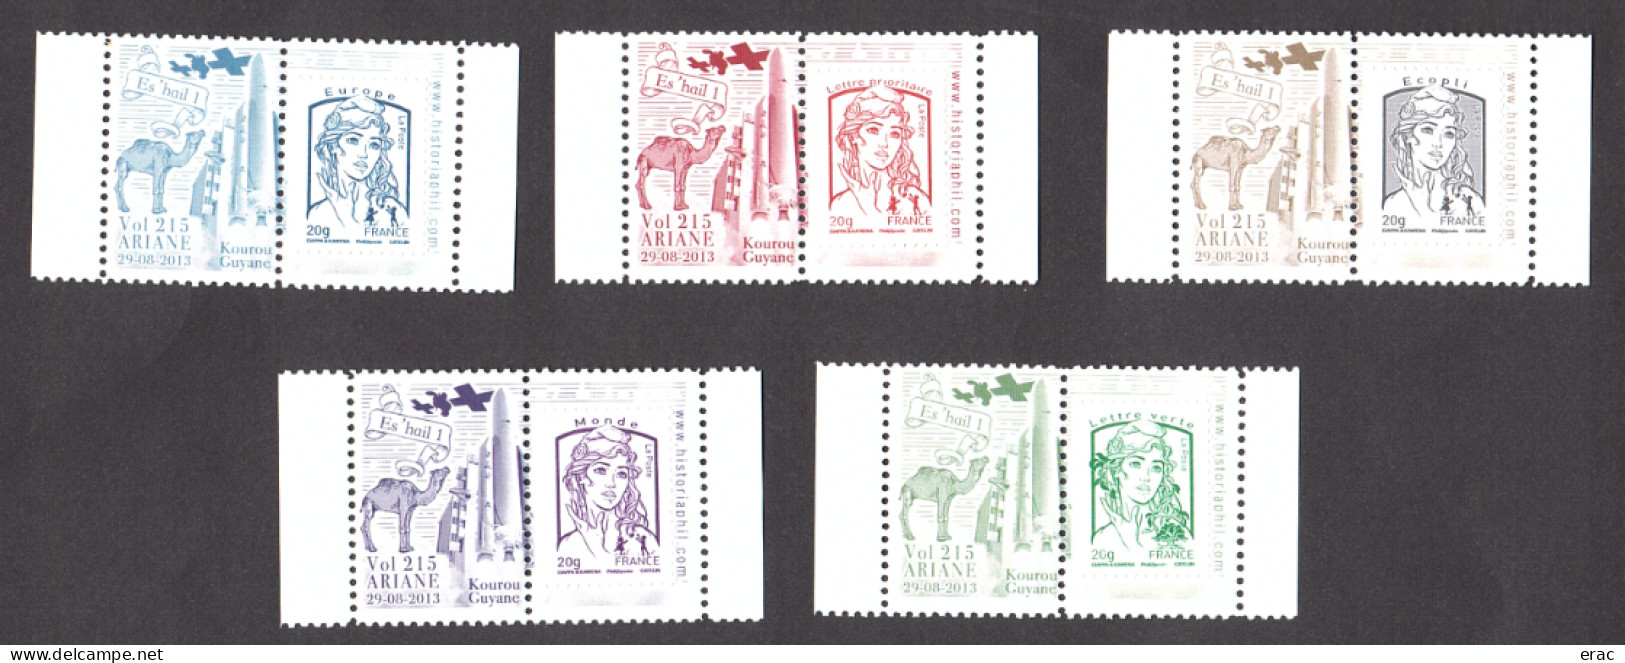 5 Porte-timbres Gommés - 2013 Ariane Vol 215 - Es'hail 1 - Avec TVP Marianne De Ciappa & Kawena Neufs - 2013-2018 Marianne Di Ciappa-Kawena